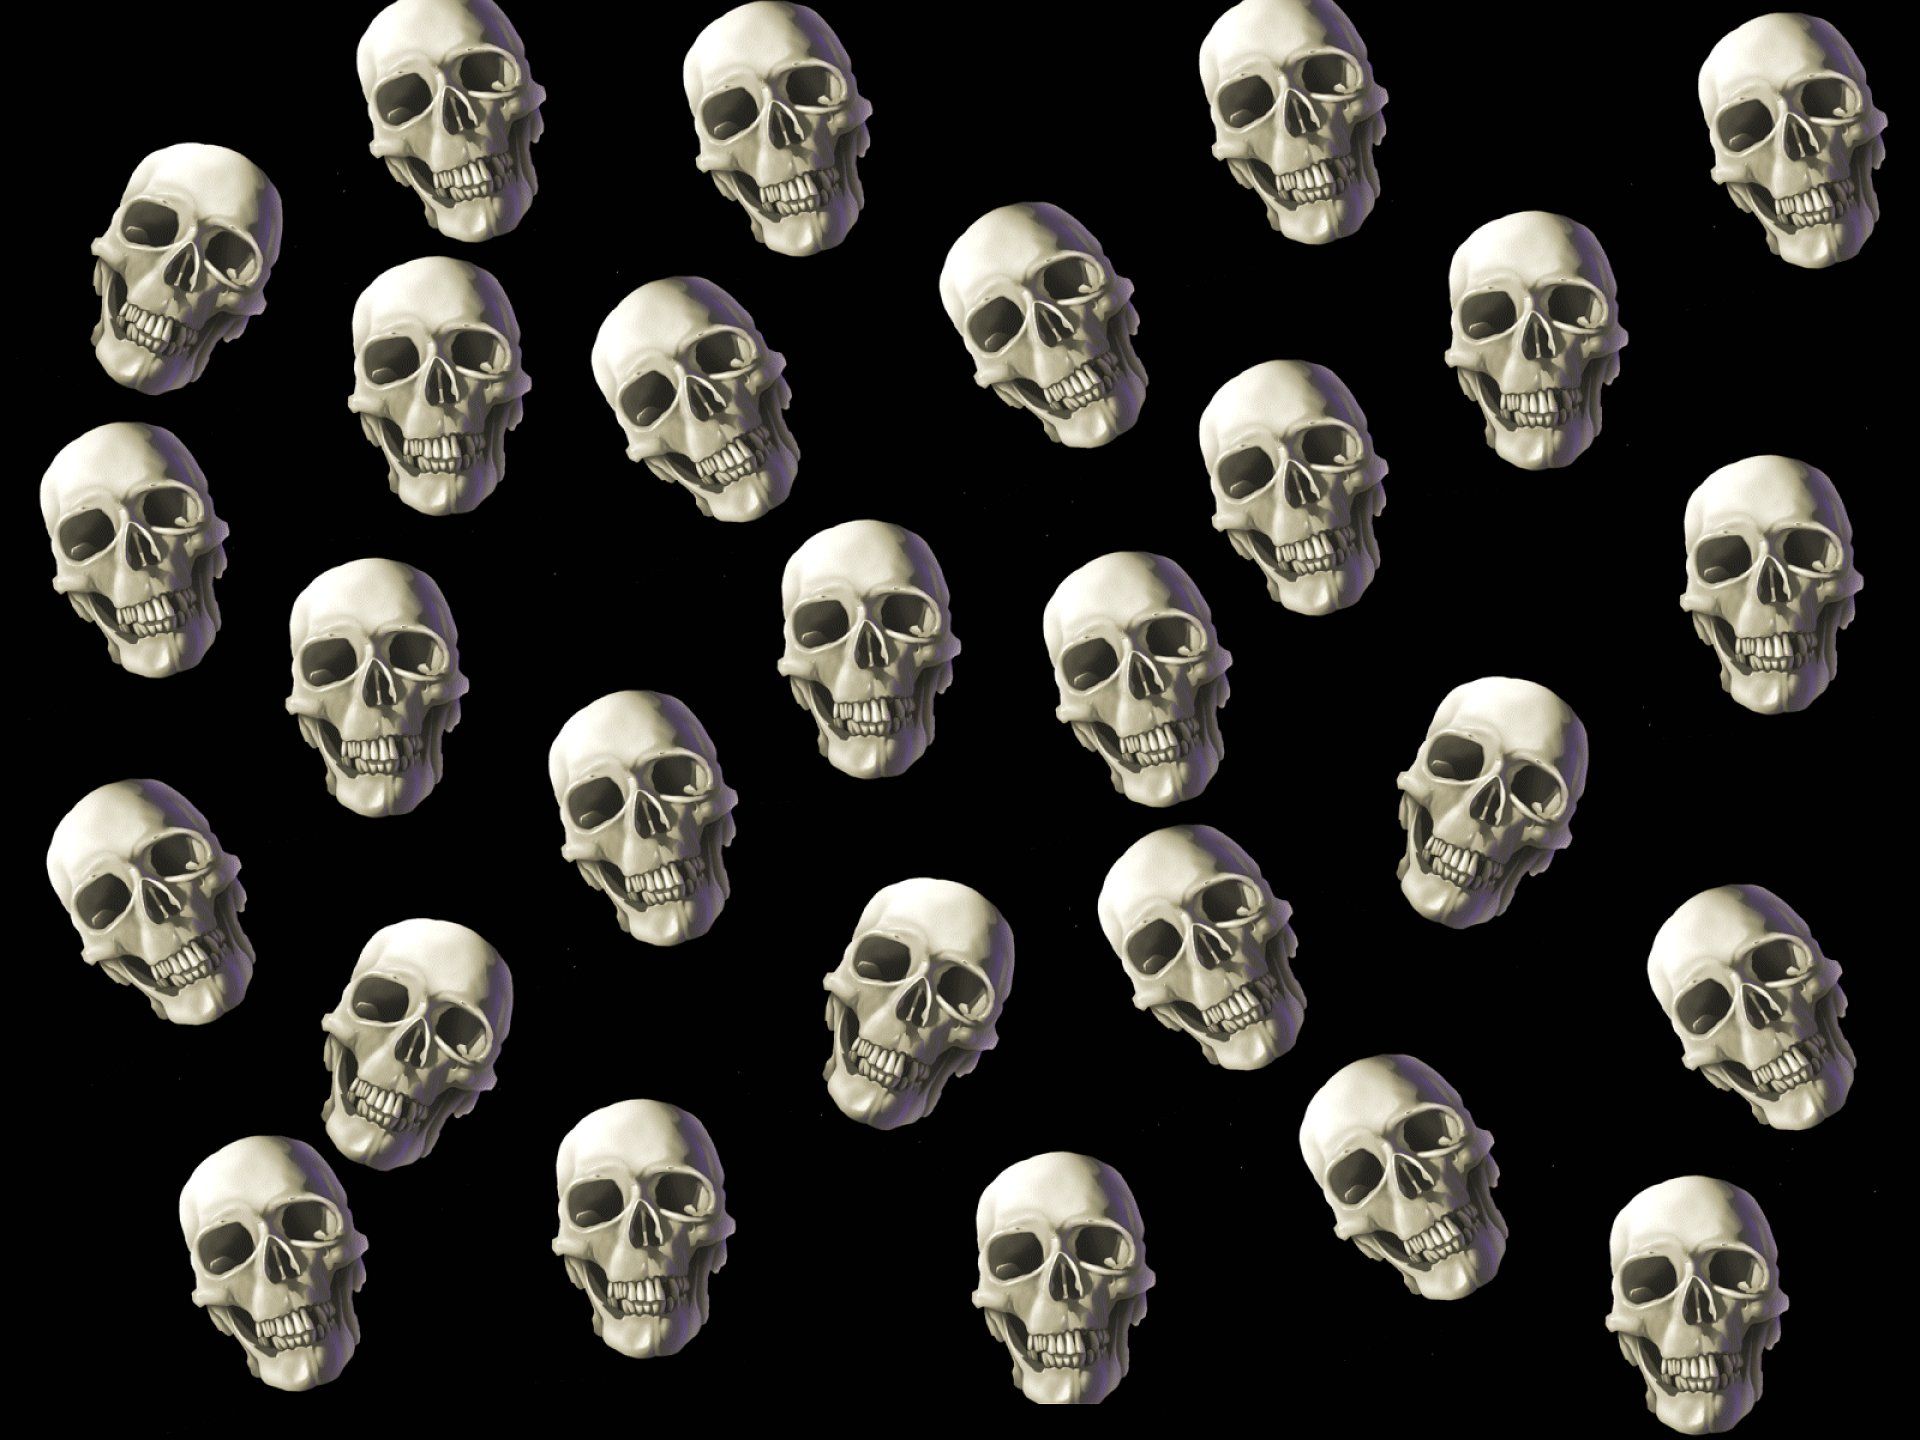 dark, Skull, Evil, Horror, Skulls, Art, Artwork, Skeleton Wallpaper HD / Desktop and Mobile Background